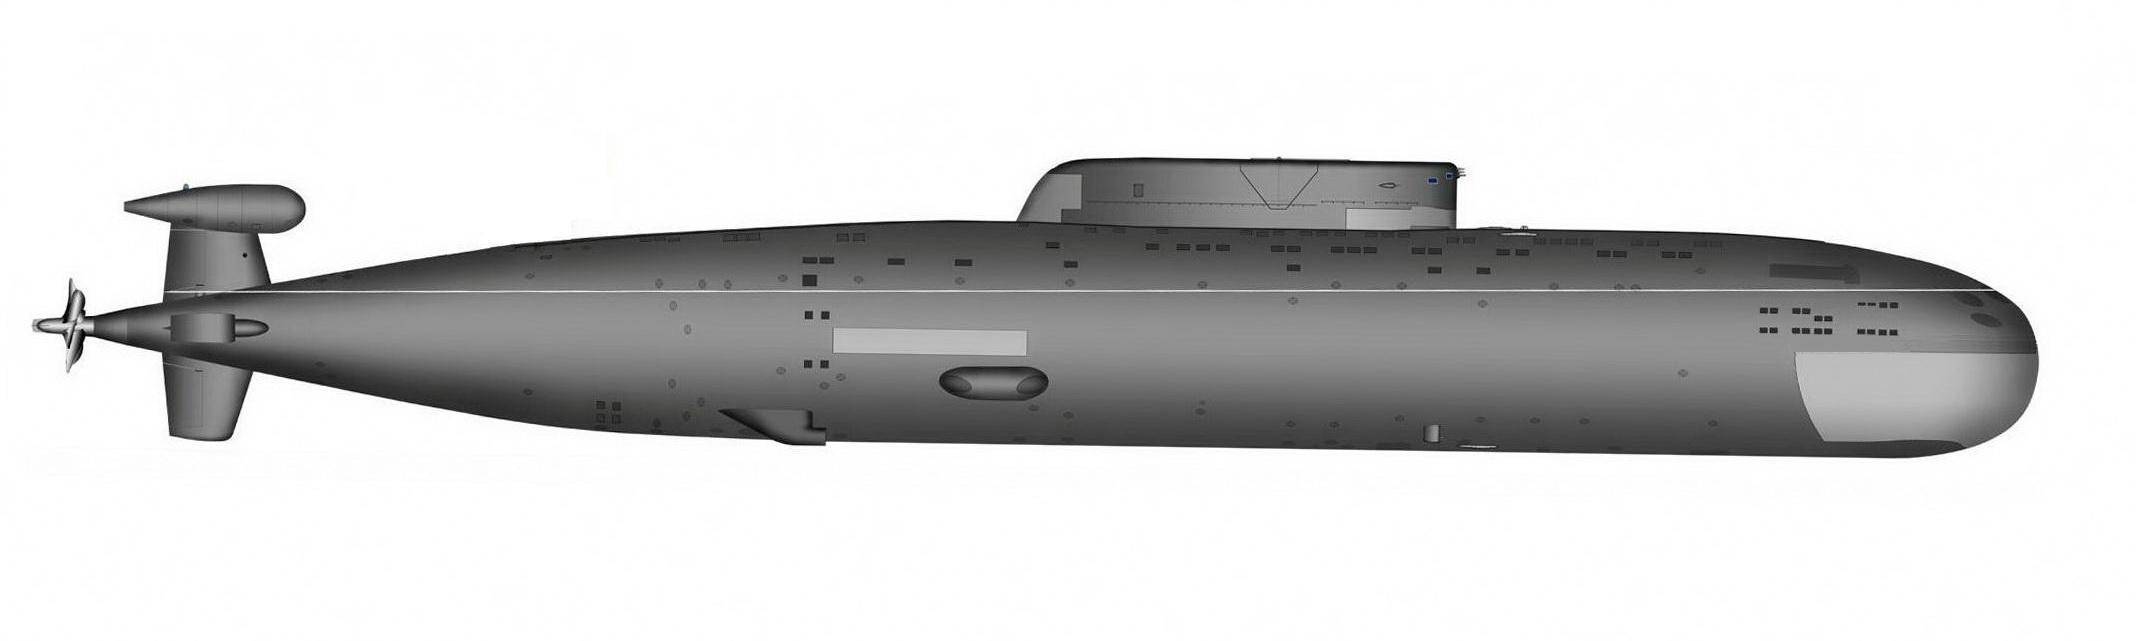 Четыре поколения подводных лодок / подводные лодки россии